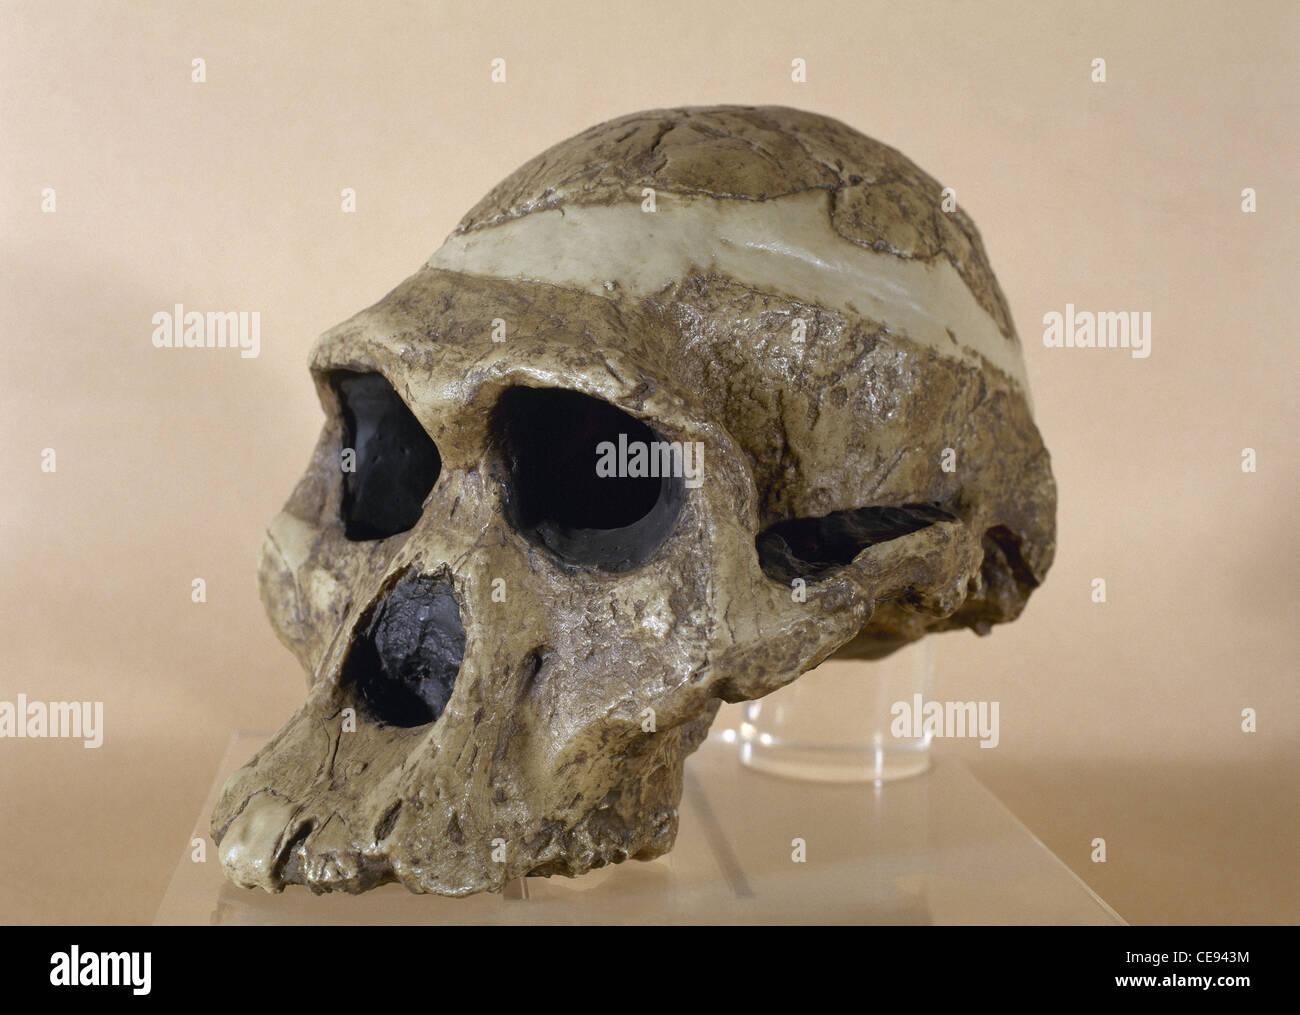 Mme ples. Reproduction d'un crâne d'un Plesianthropus strataria. Trouvé à Sterkfontein. L'Afrique du Sud. Banque D'Images